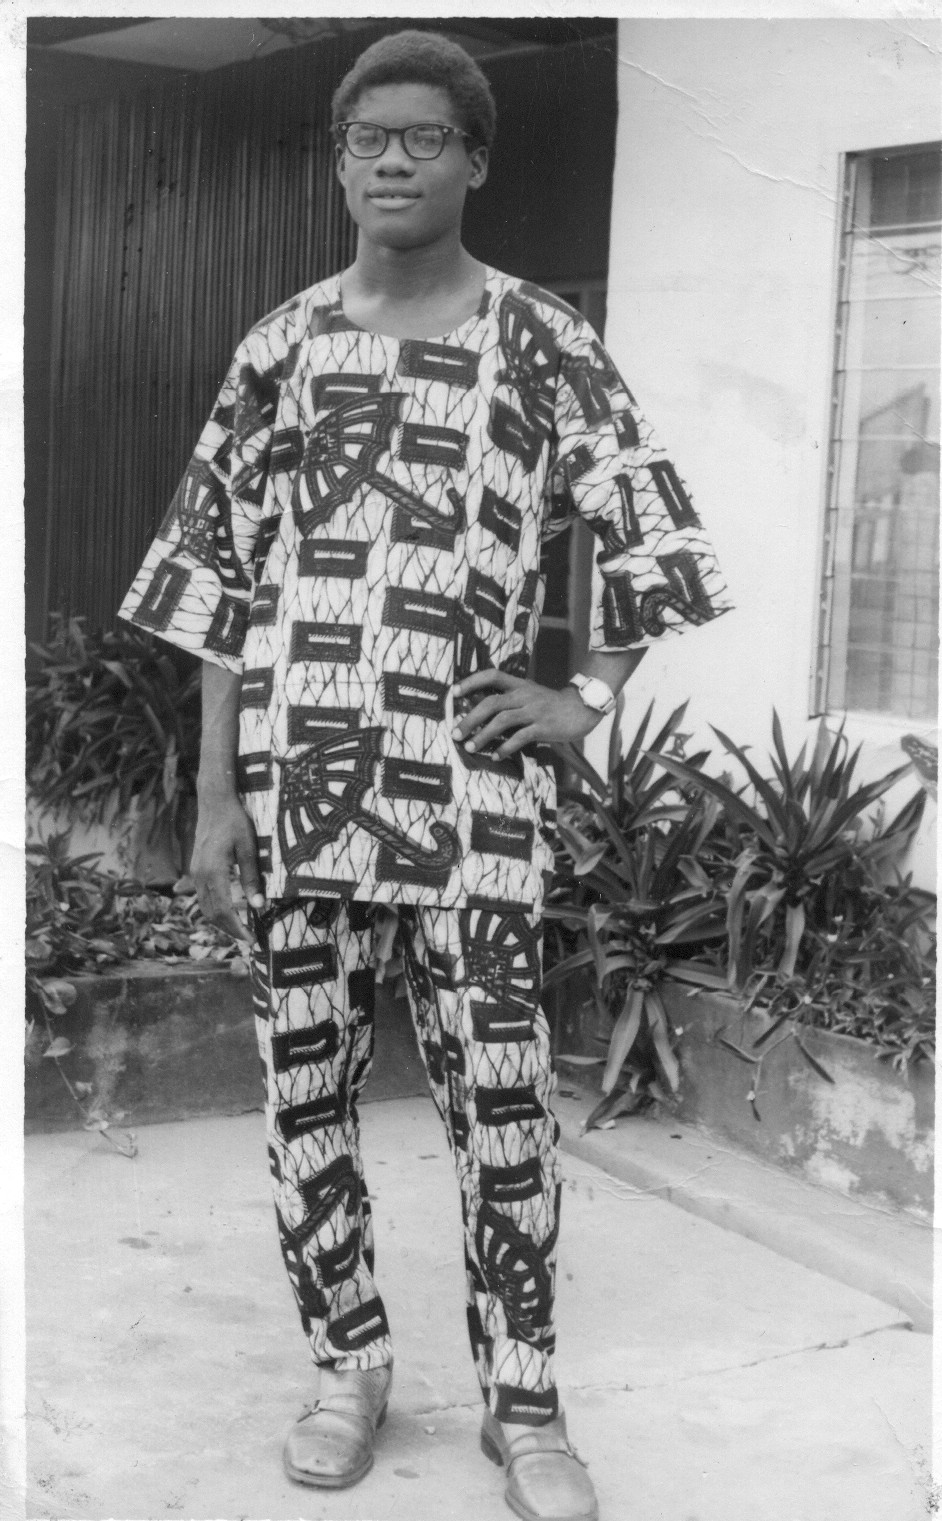 philip-emeagwali-1-and-3-ajalli-street-uwani-enugu-nigeria-1972[1].jpg